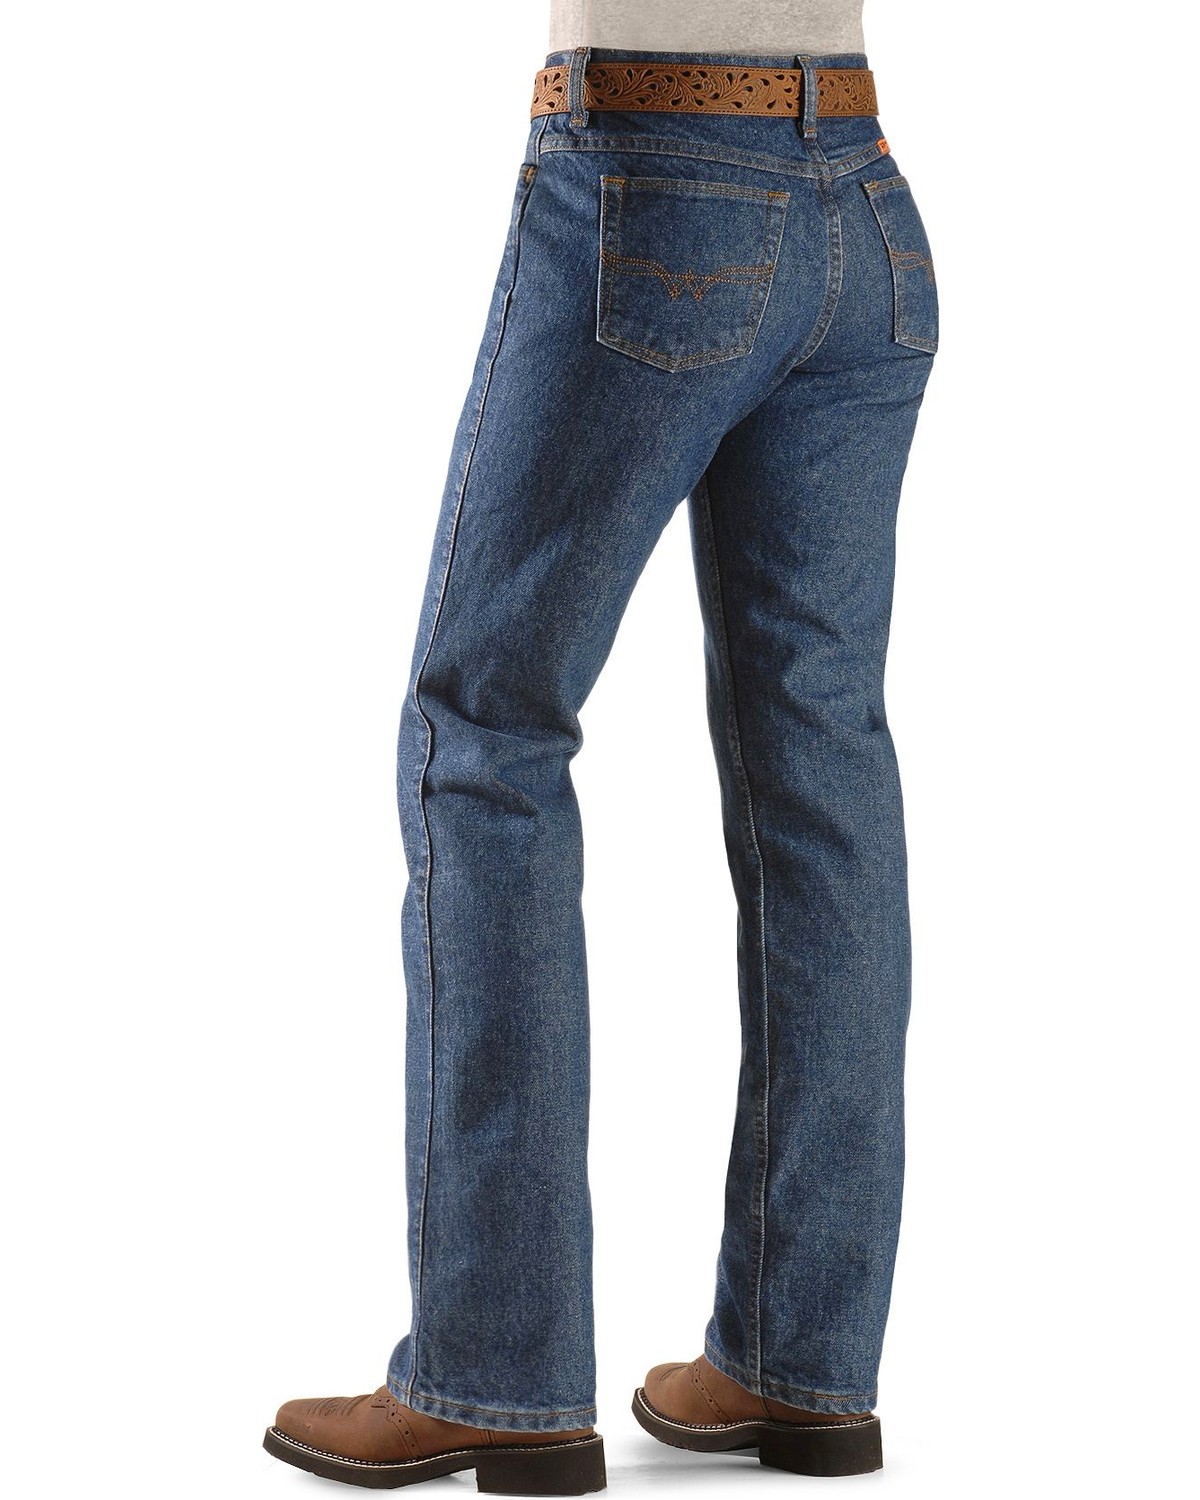 wrangler jeans work